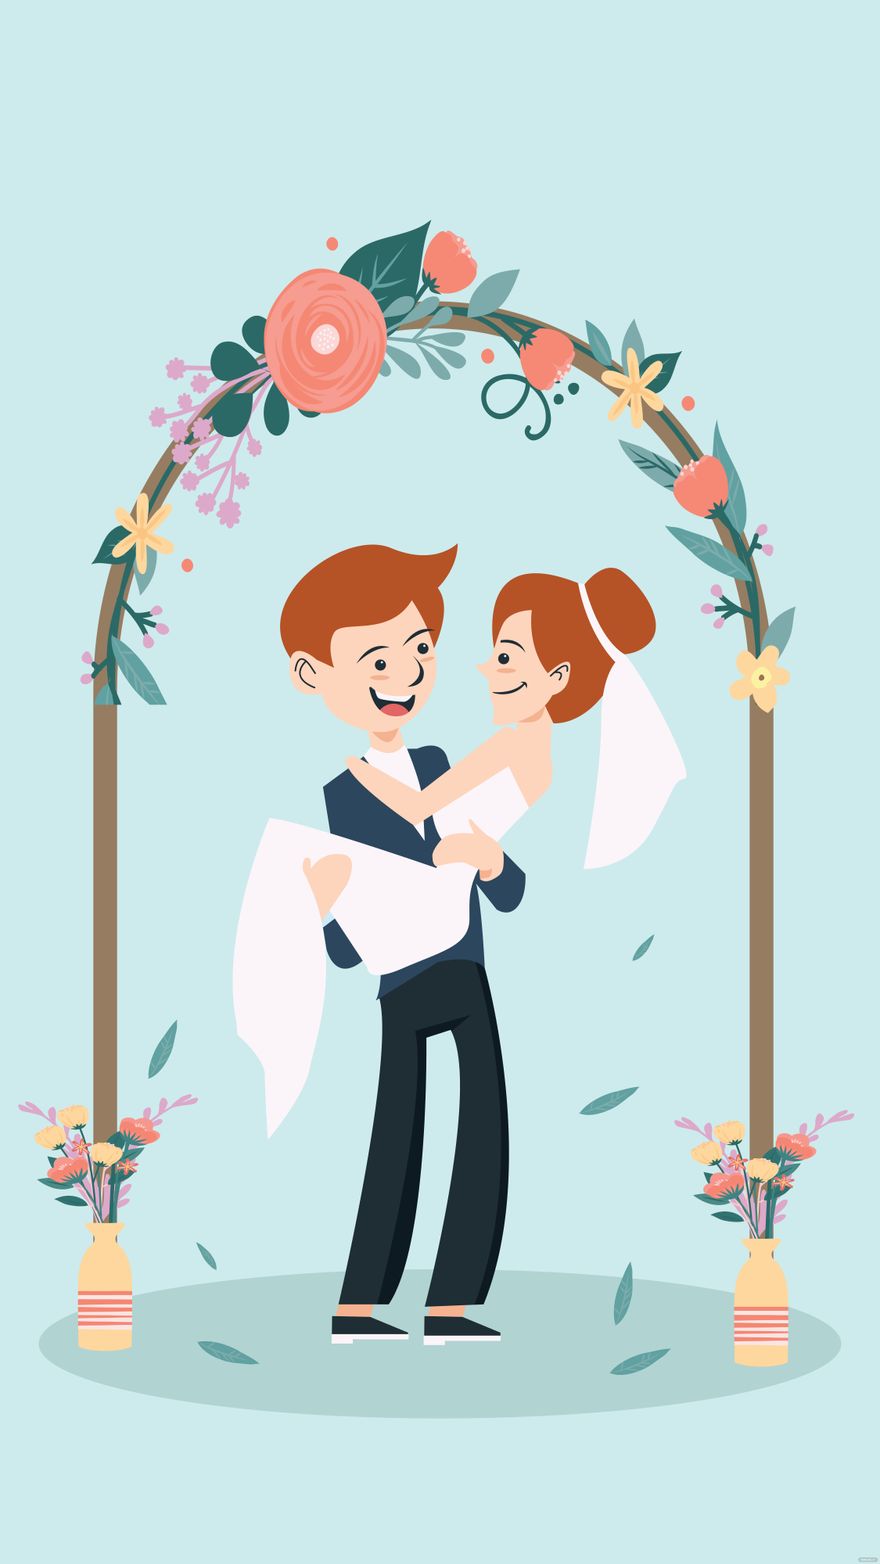 Free Wedding Decoration Mobile Background - EPS, Illustrator, JPG, PNG, SVG  